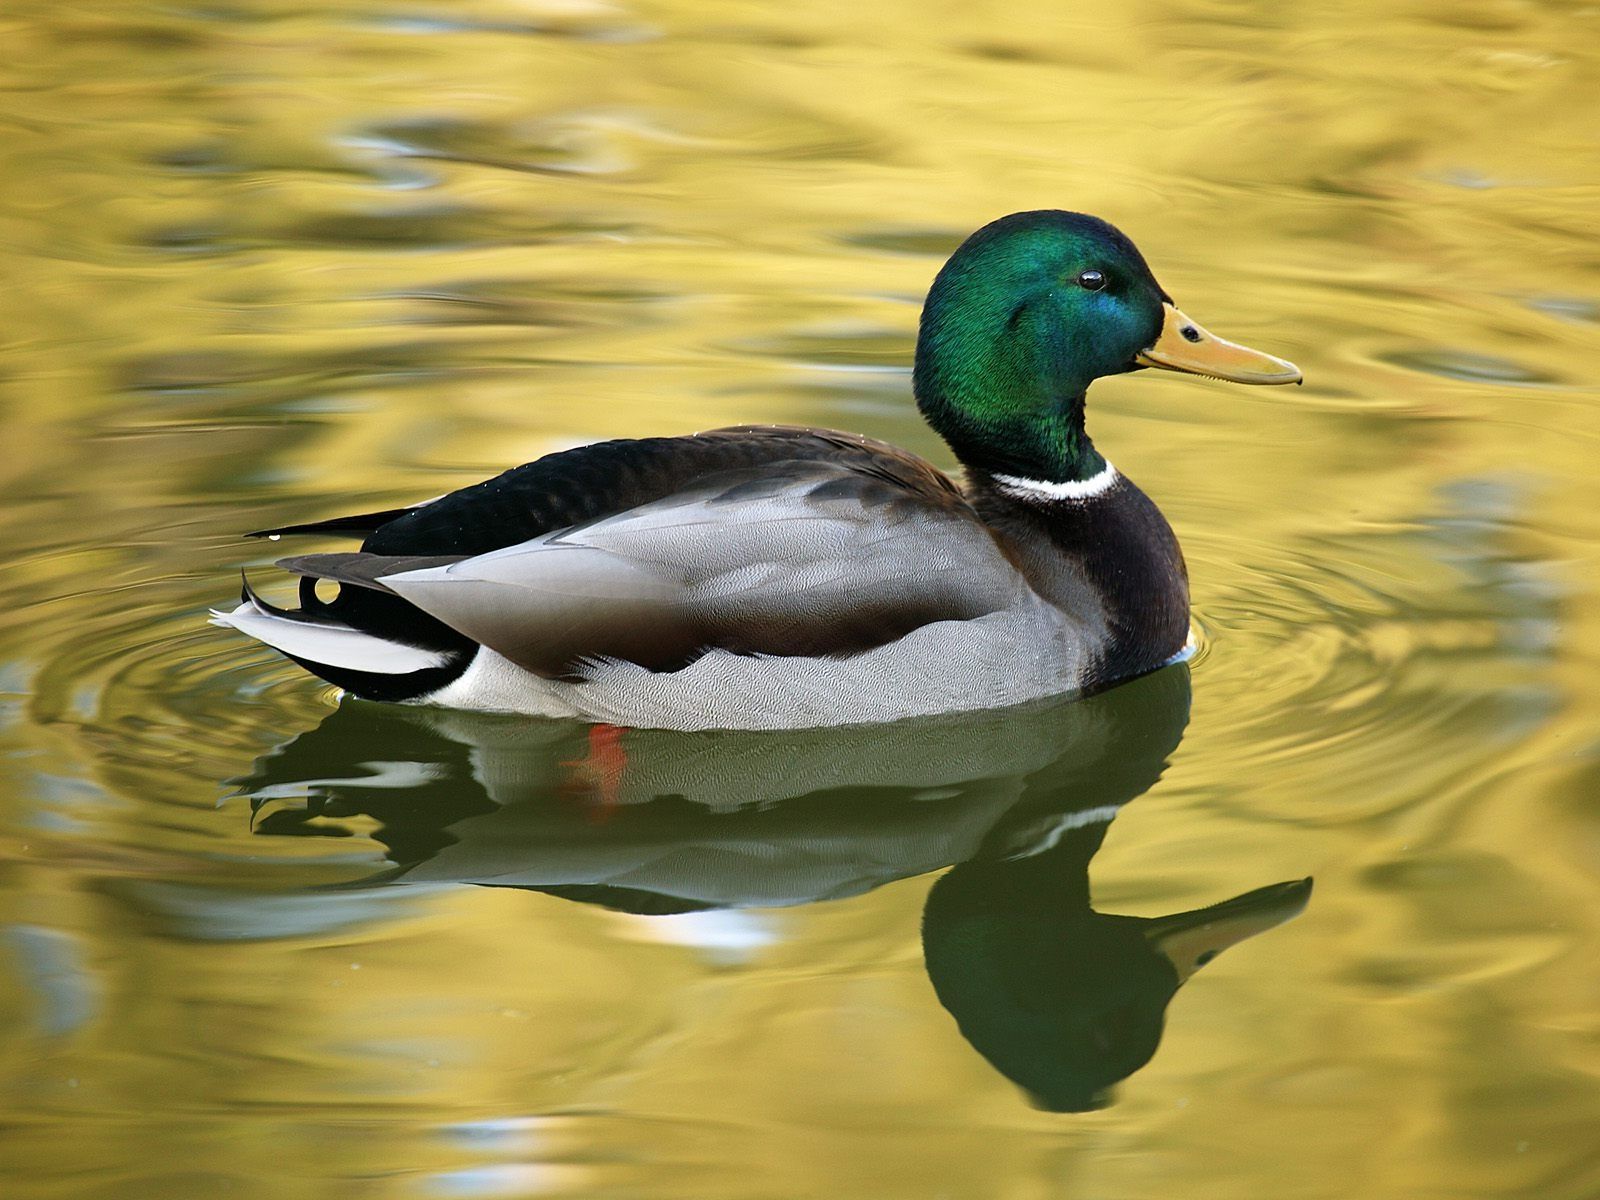 24 Mallard Duck Wallpaper | Download Wallpaper | Pinterest | Duck ...